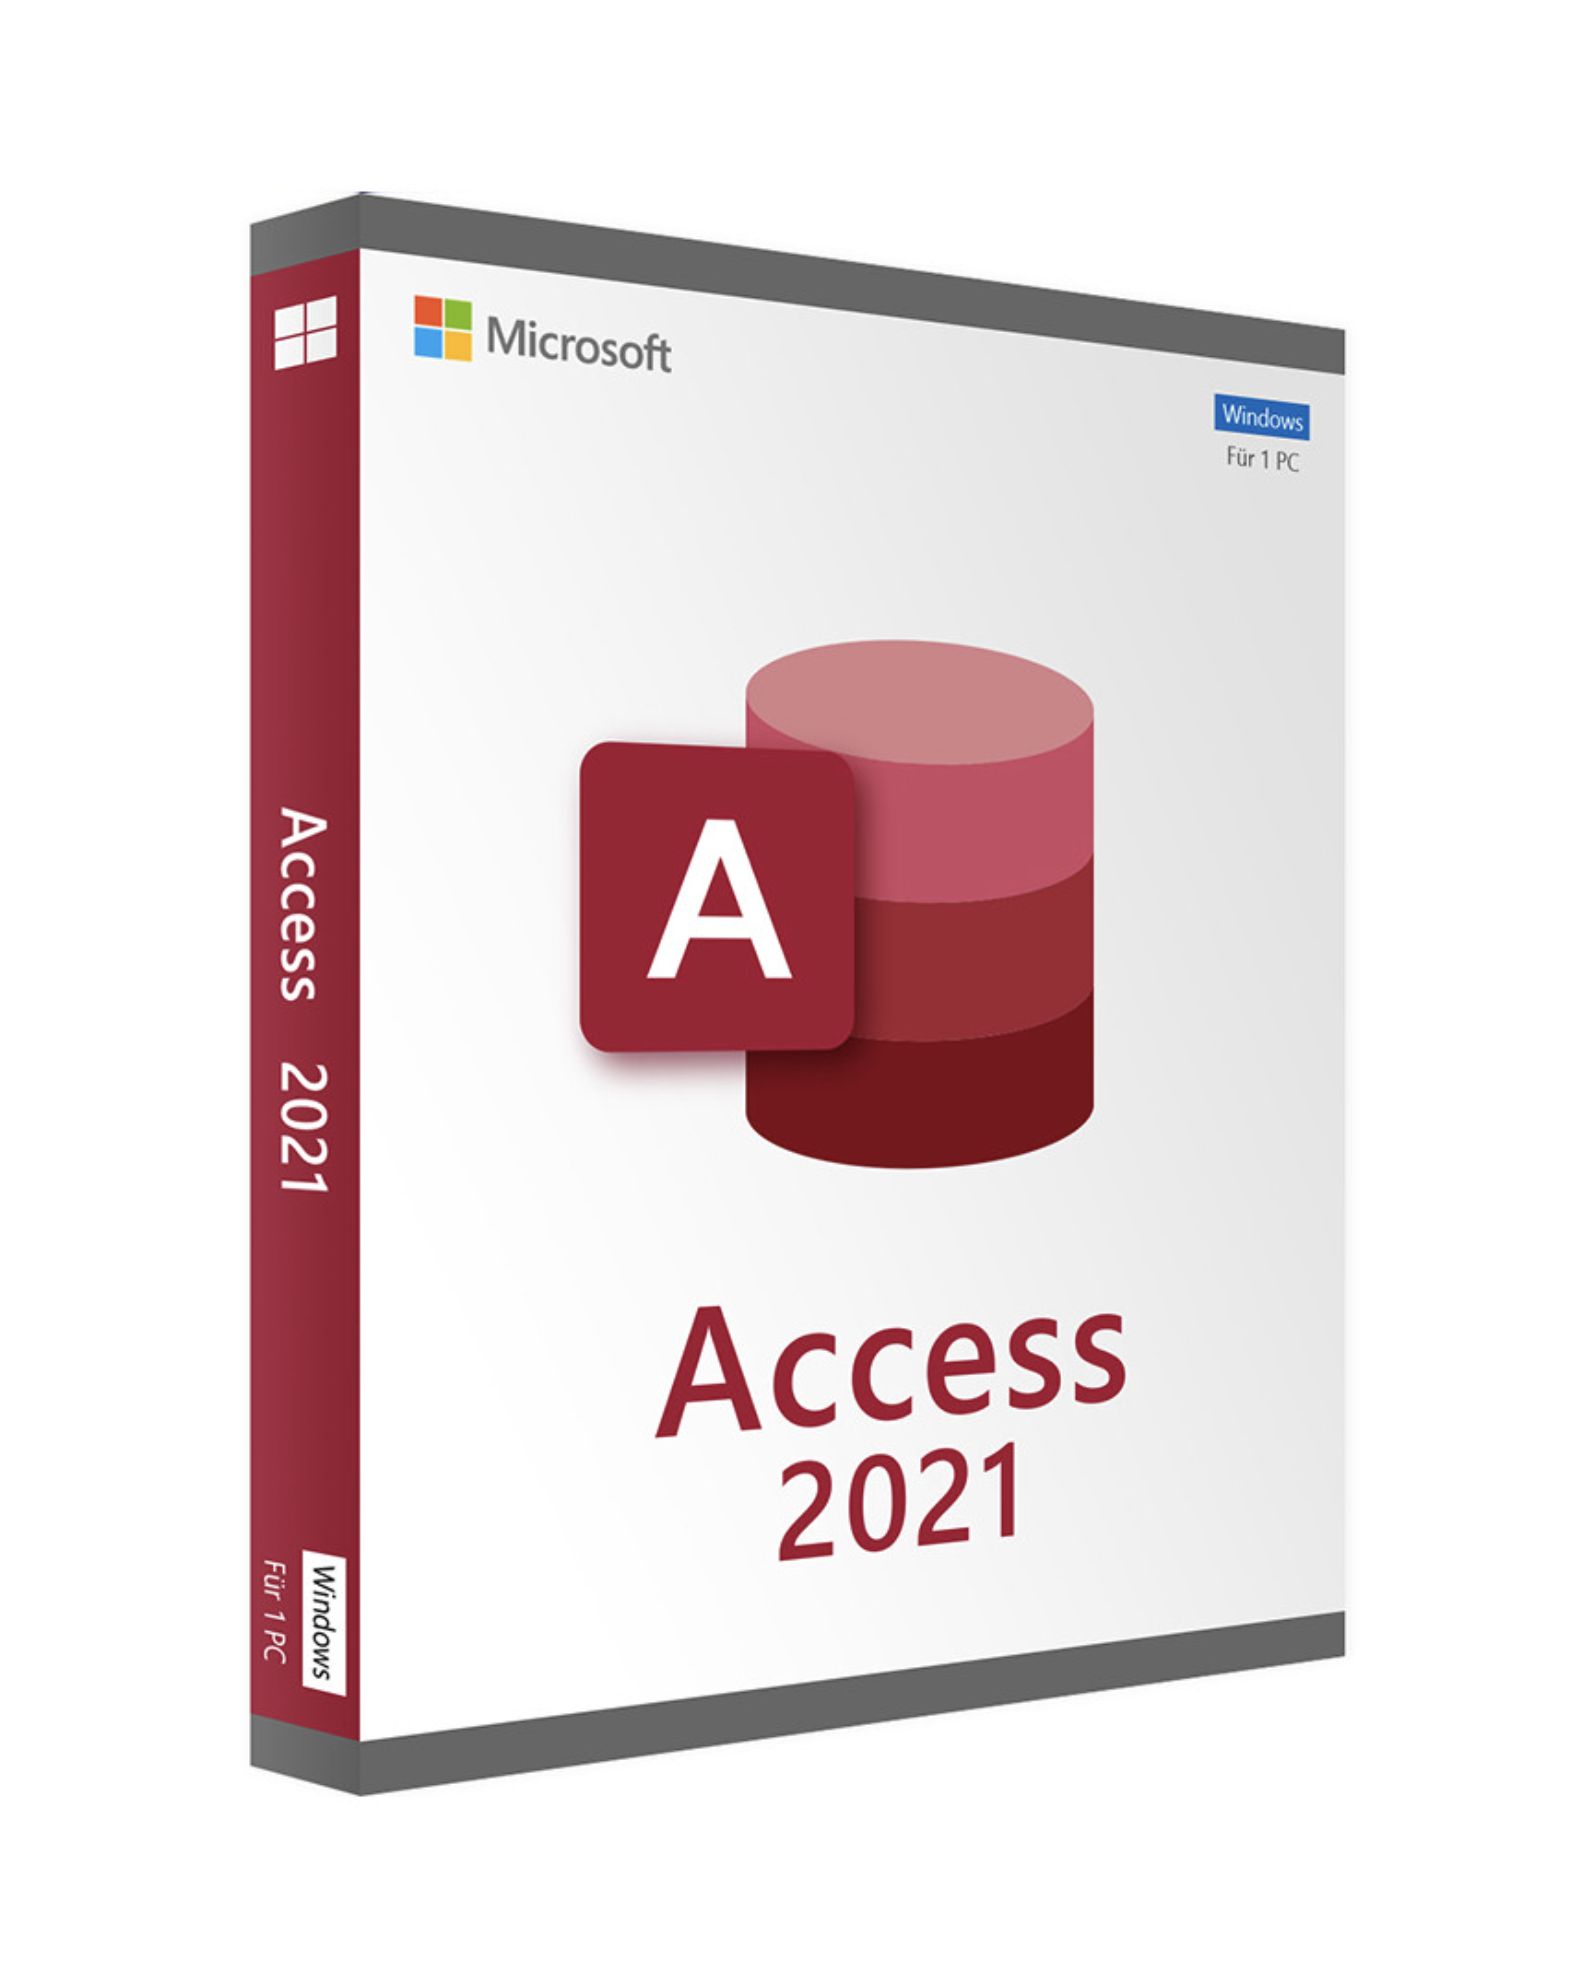 Access 2022. Microsoft access. Microsoft access 2021. Microsoft access 2022. Access 2021 logo.